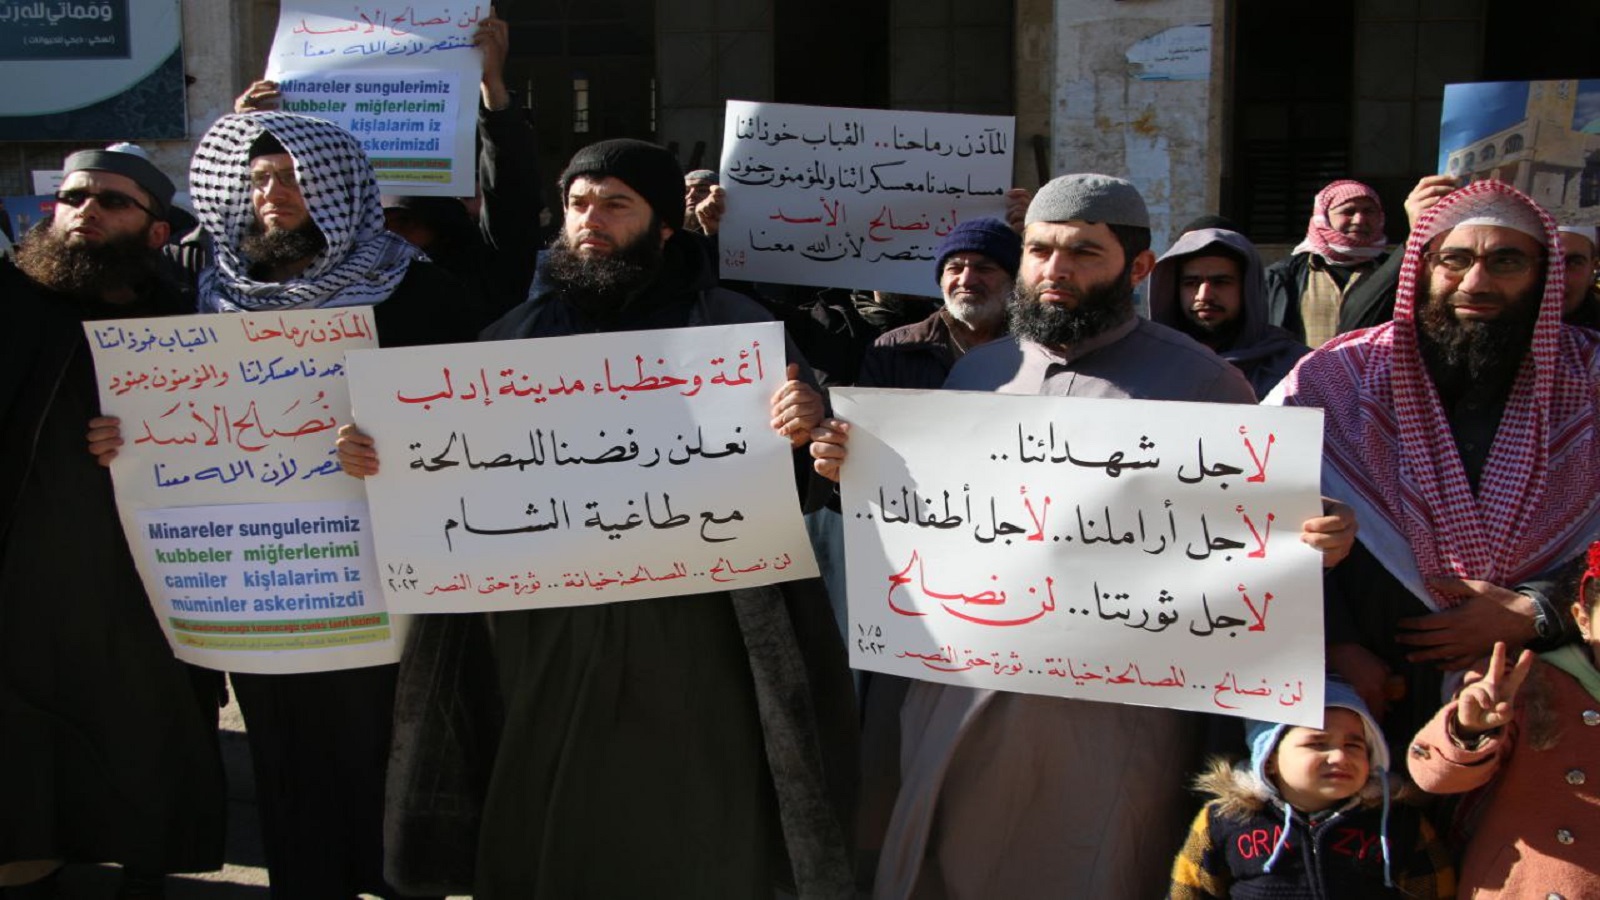 إدلب:الرسول يأمر تحرير الشام بقتال النظام..وعدم المصالحة!